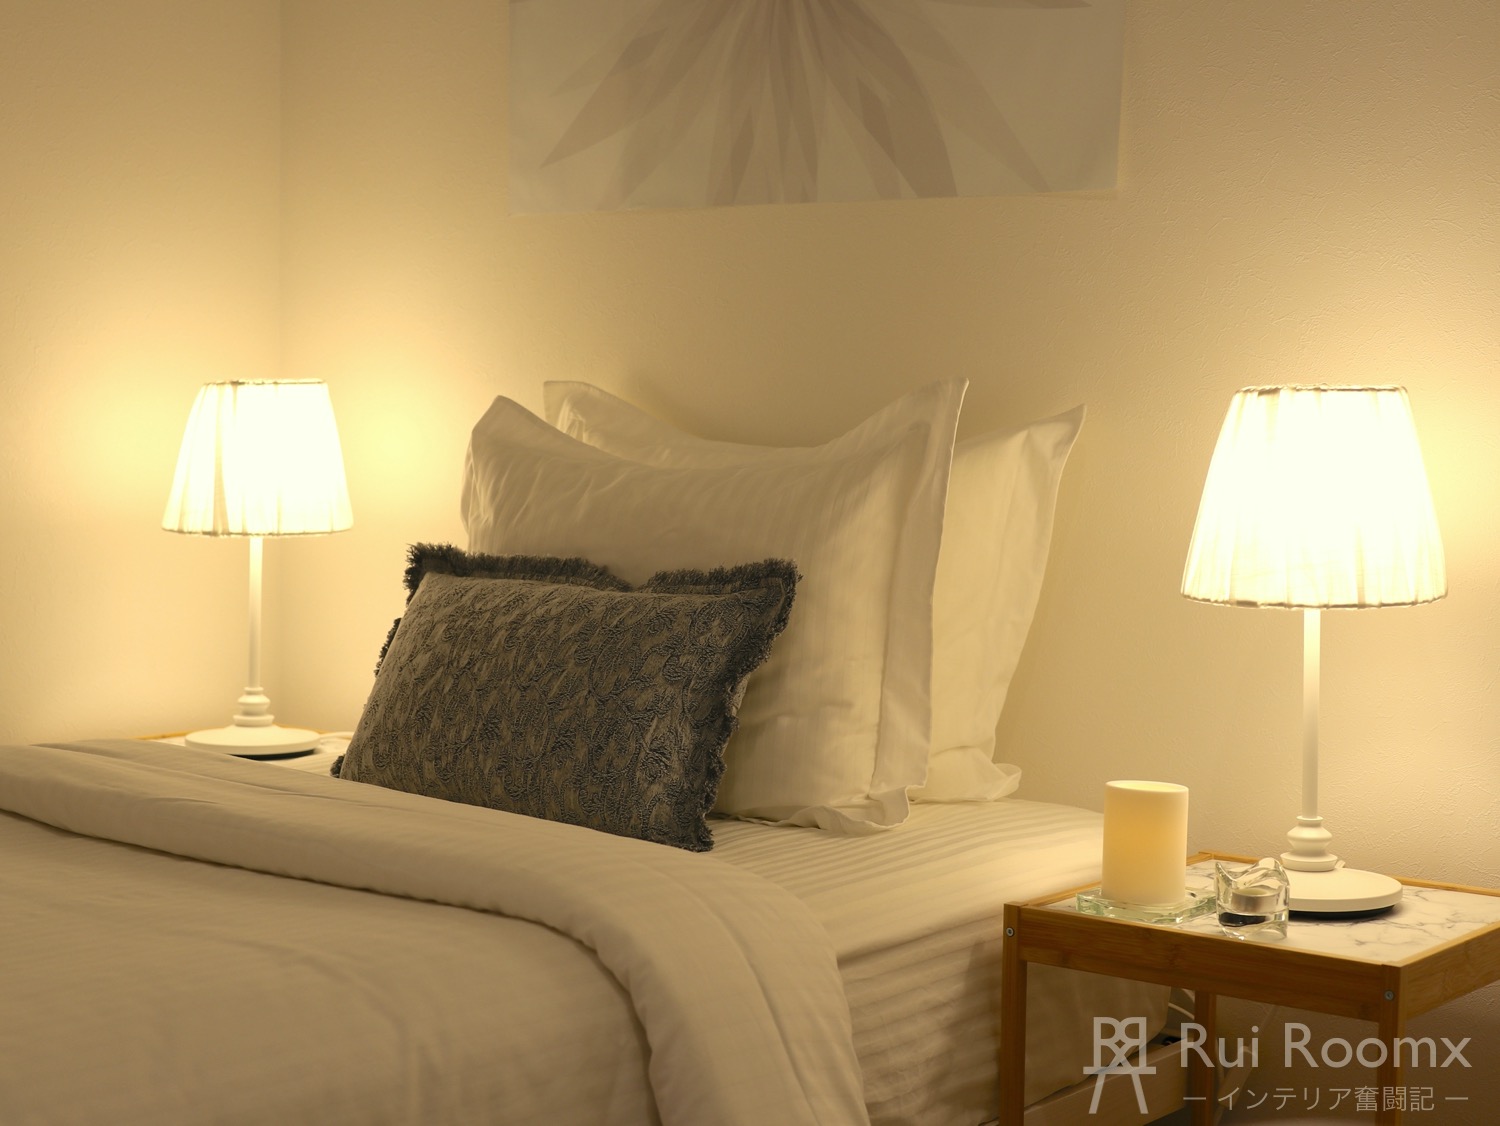 ruiroomx bedroom bed-mattress night